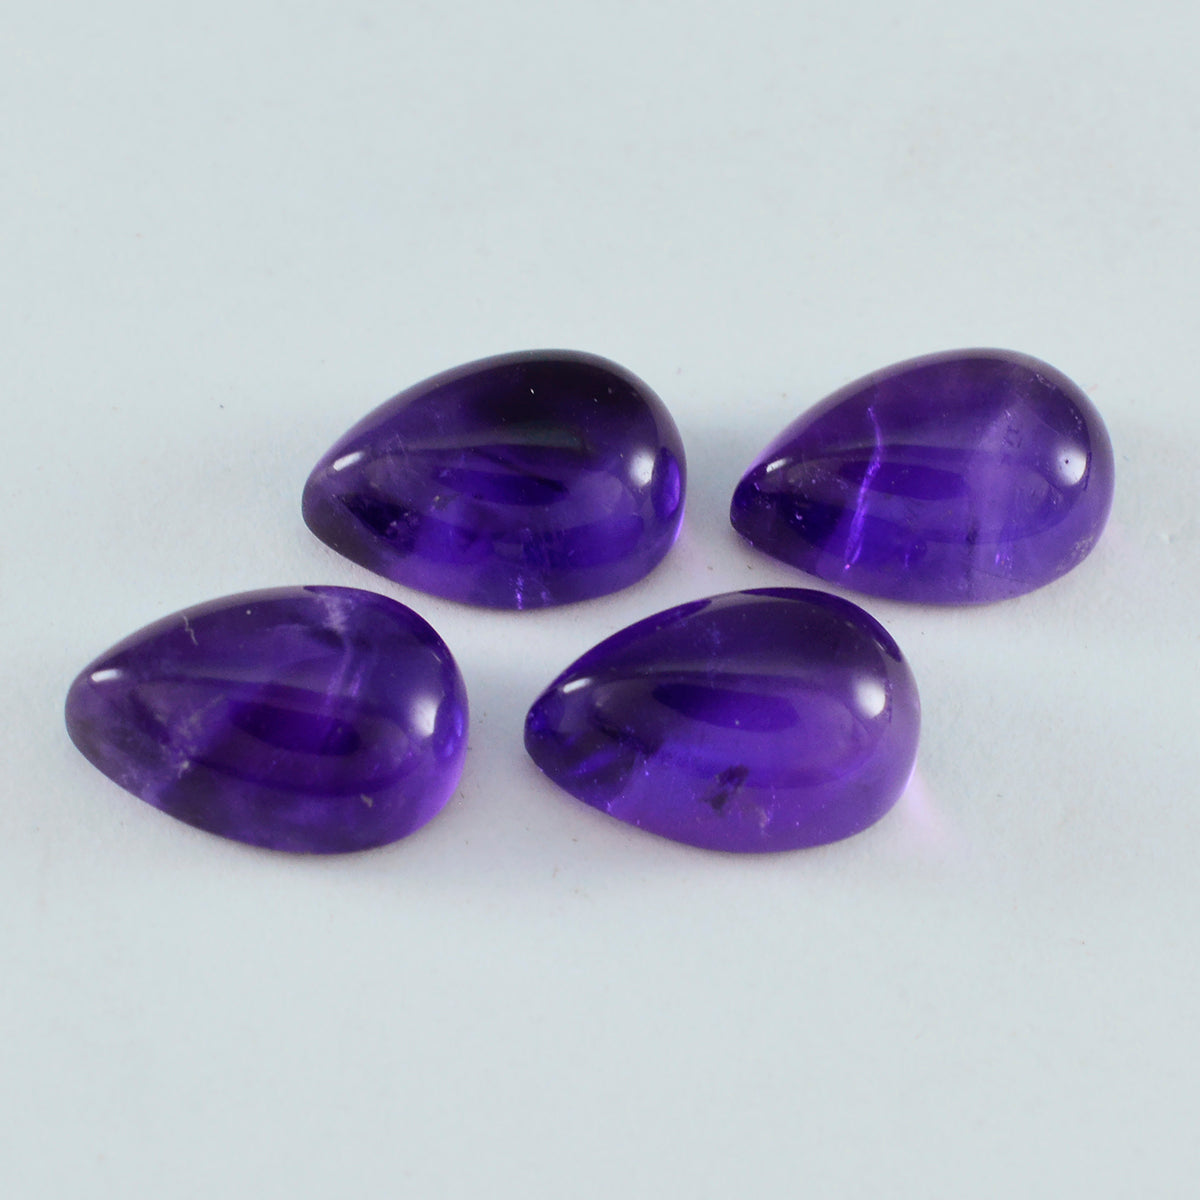 Riyogems 1 pieza cabujón de amatista púrpura 8X12mm forma de pera gema de calidad fantástica